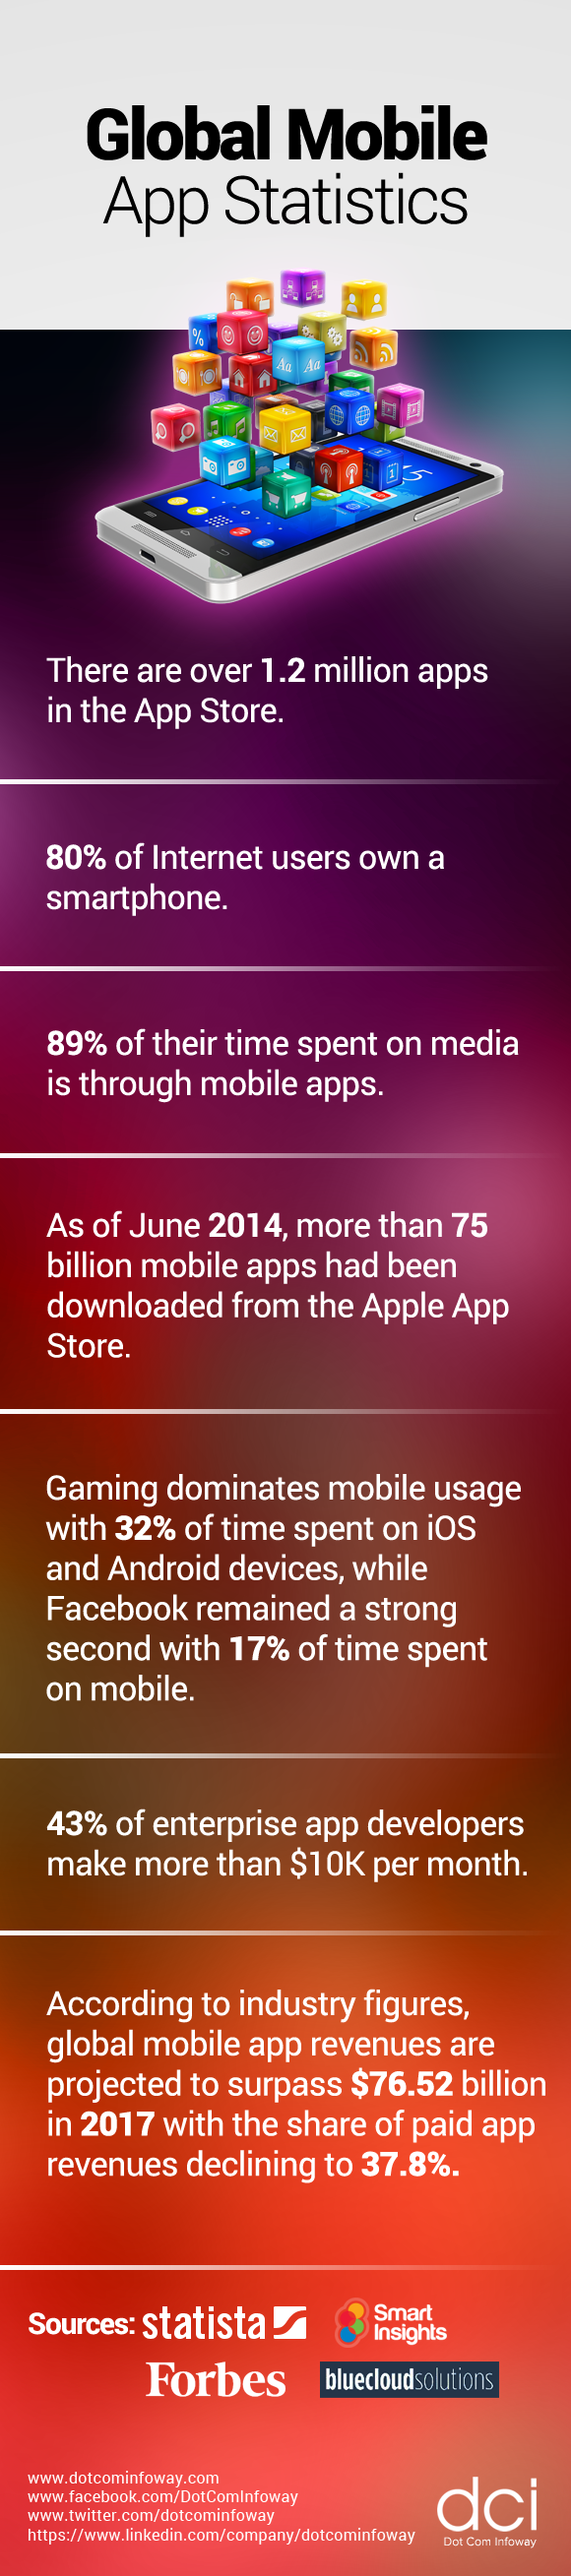 Global Mobile App Statistics